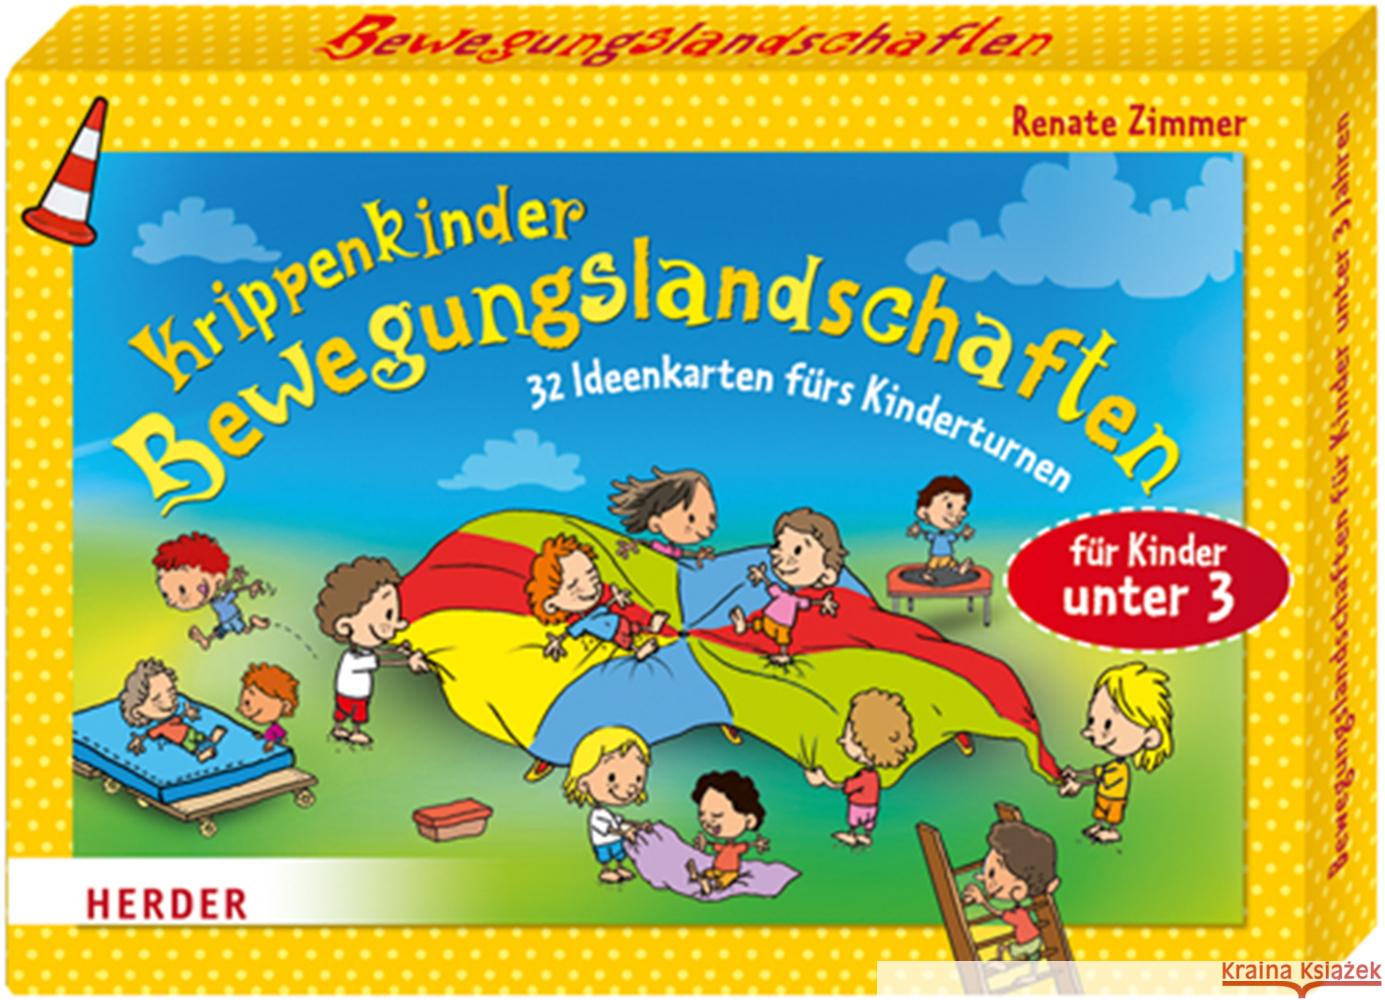 Krippenkinder - Bewegungslandschaften : 32 Ideenkarten fürs Kinderturnen. Für Kinder unter 3 Zimmer, Renate 9783451327452 Herder, Freiburg